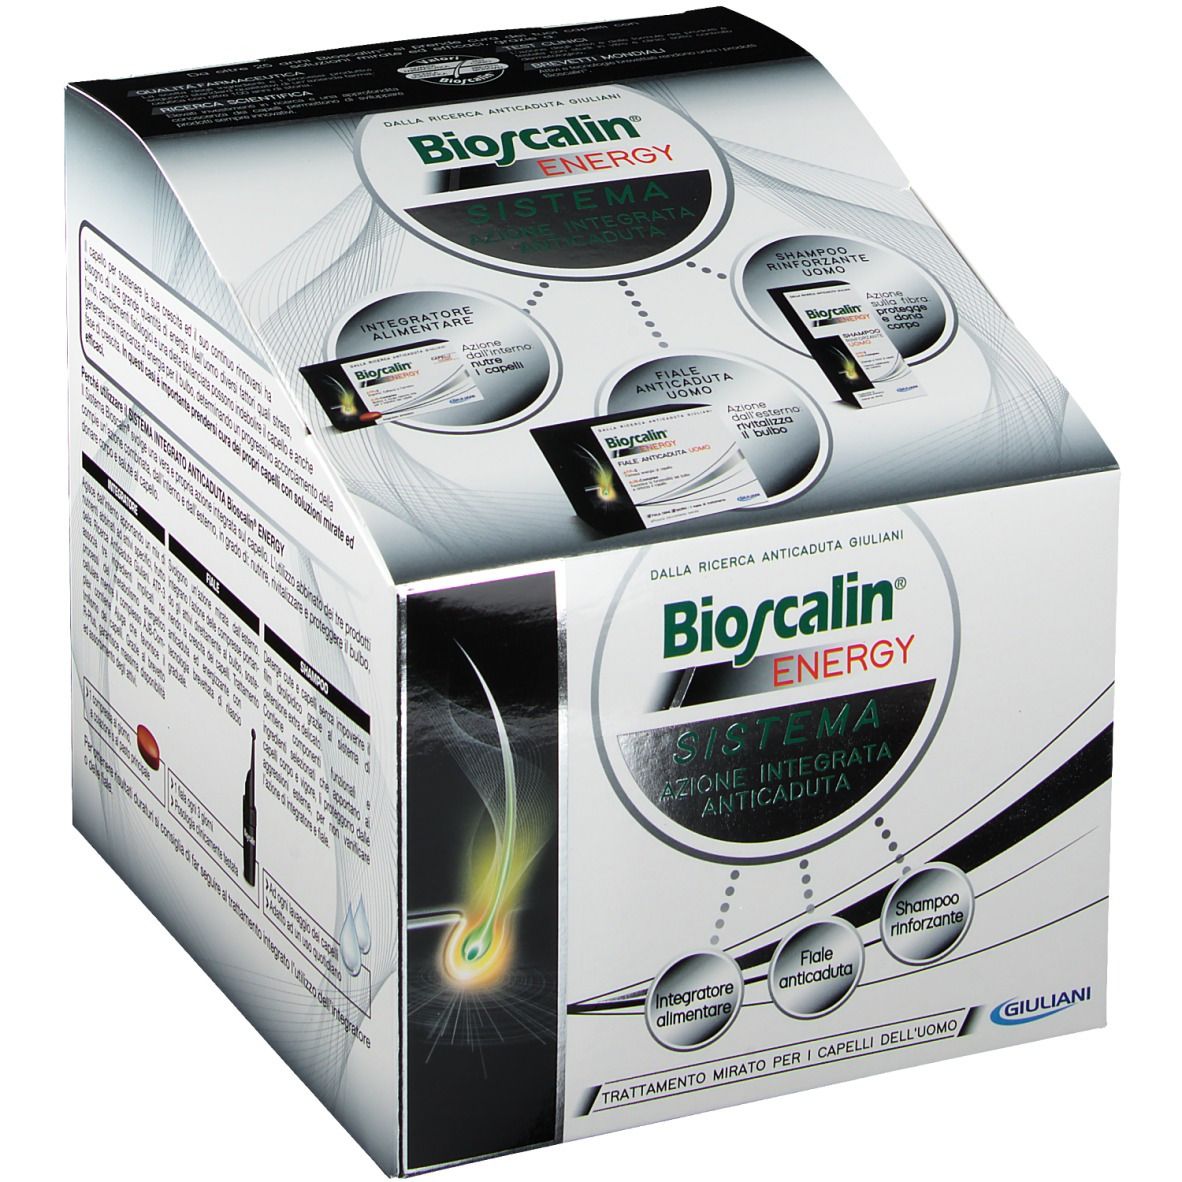 Bioscalin® Sistema Energy